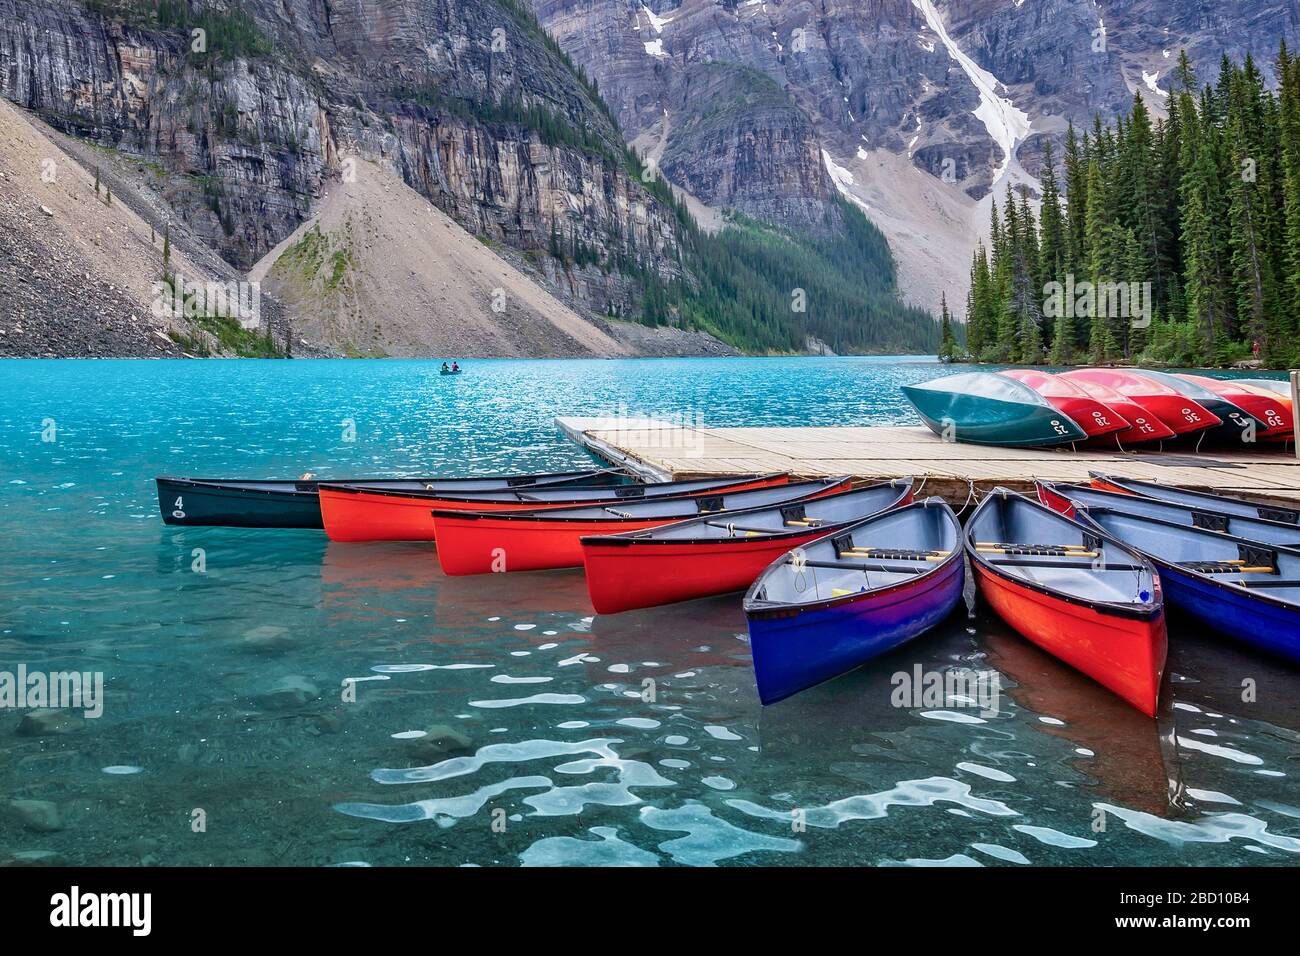 Canoas Corlorful en el lago Moraine cerca de la aldea del lago Louise en el Parque Nacional Banff, Alberta, Montañas Rocosas, Canadá Foto de stock